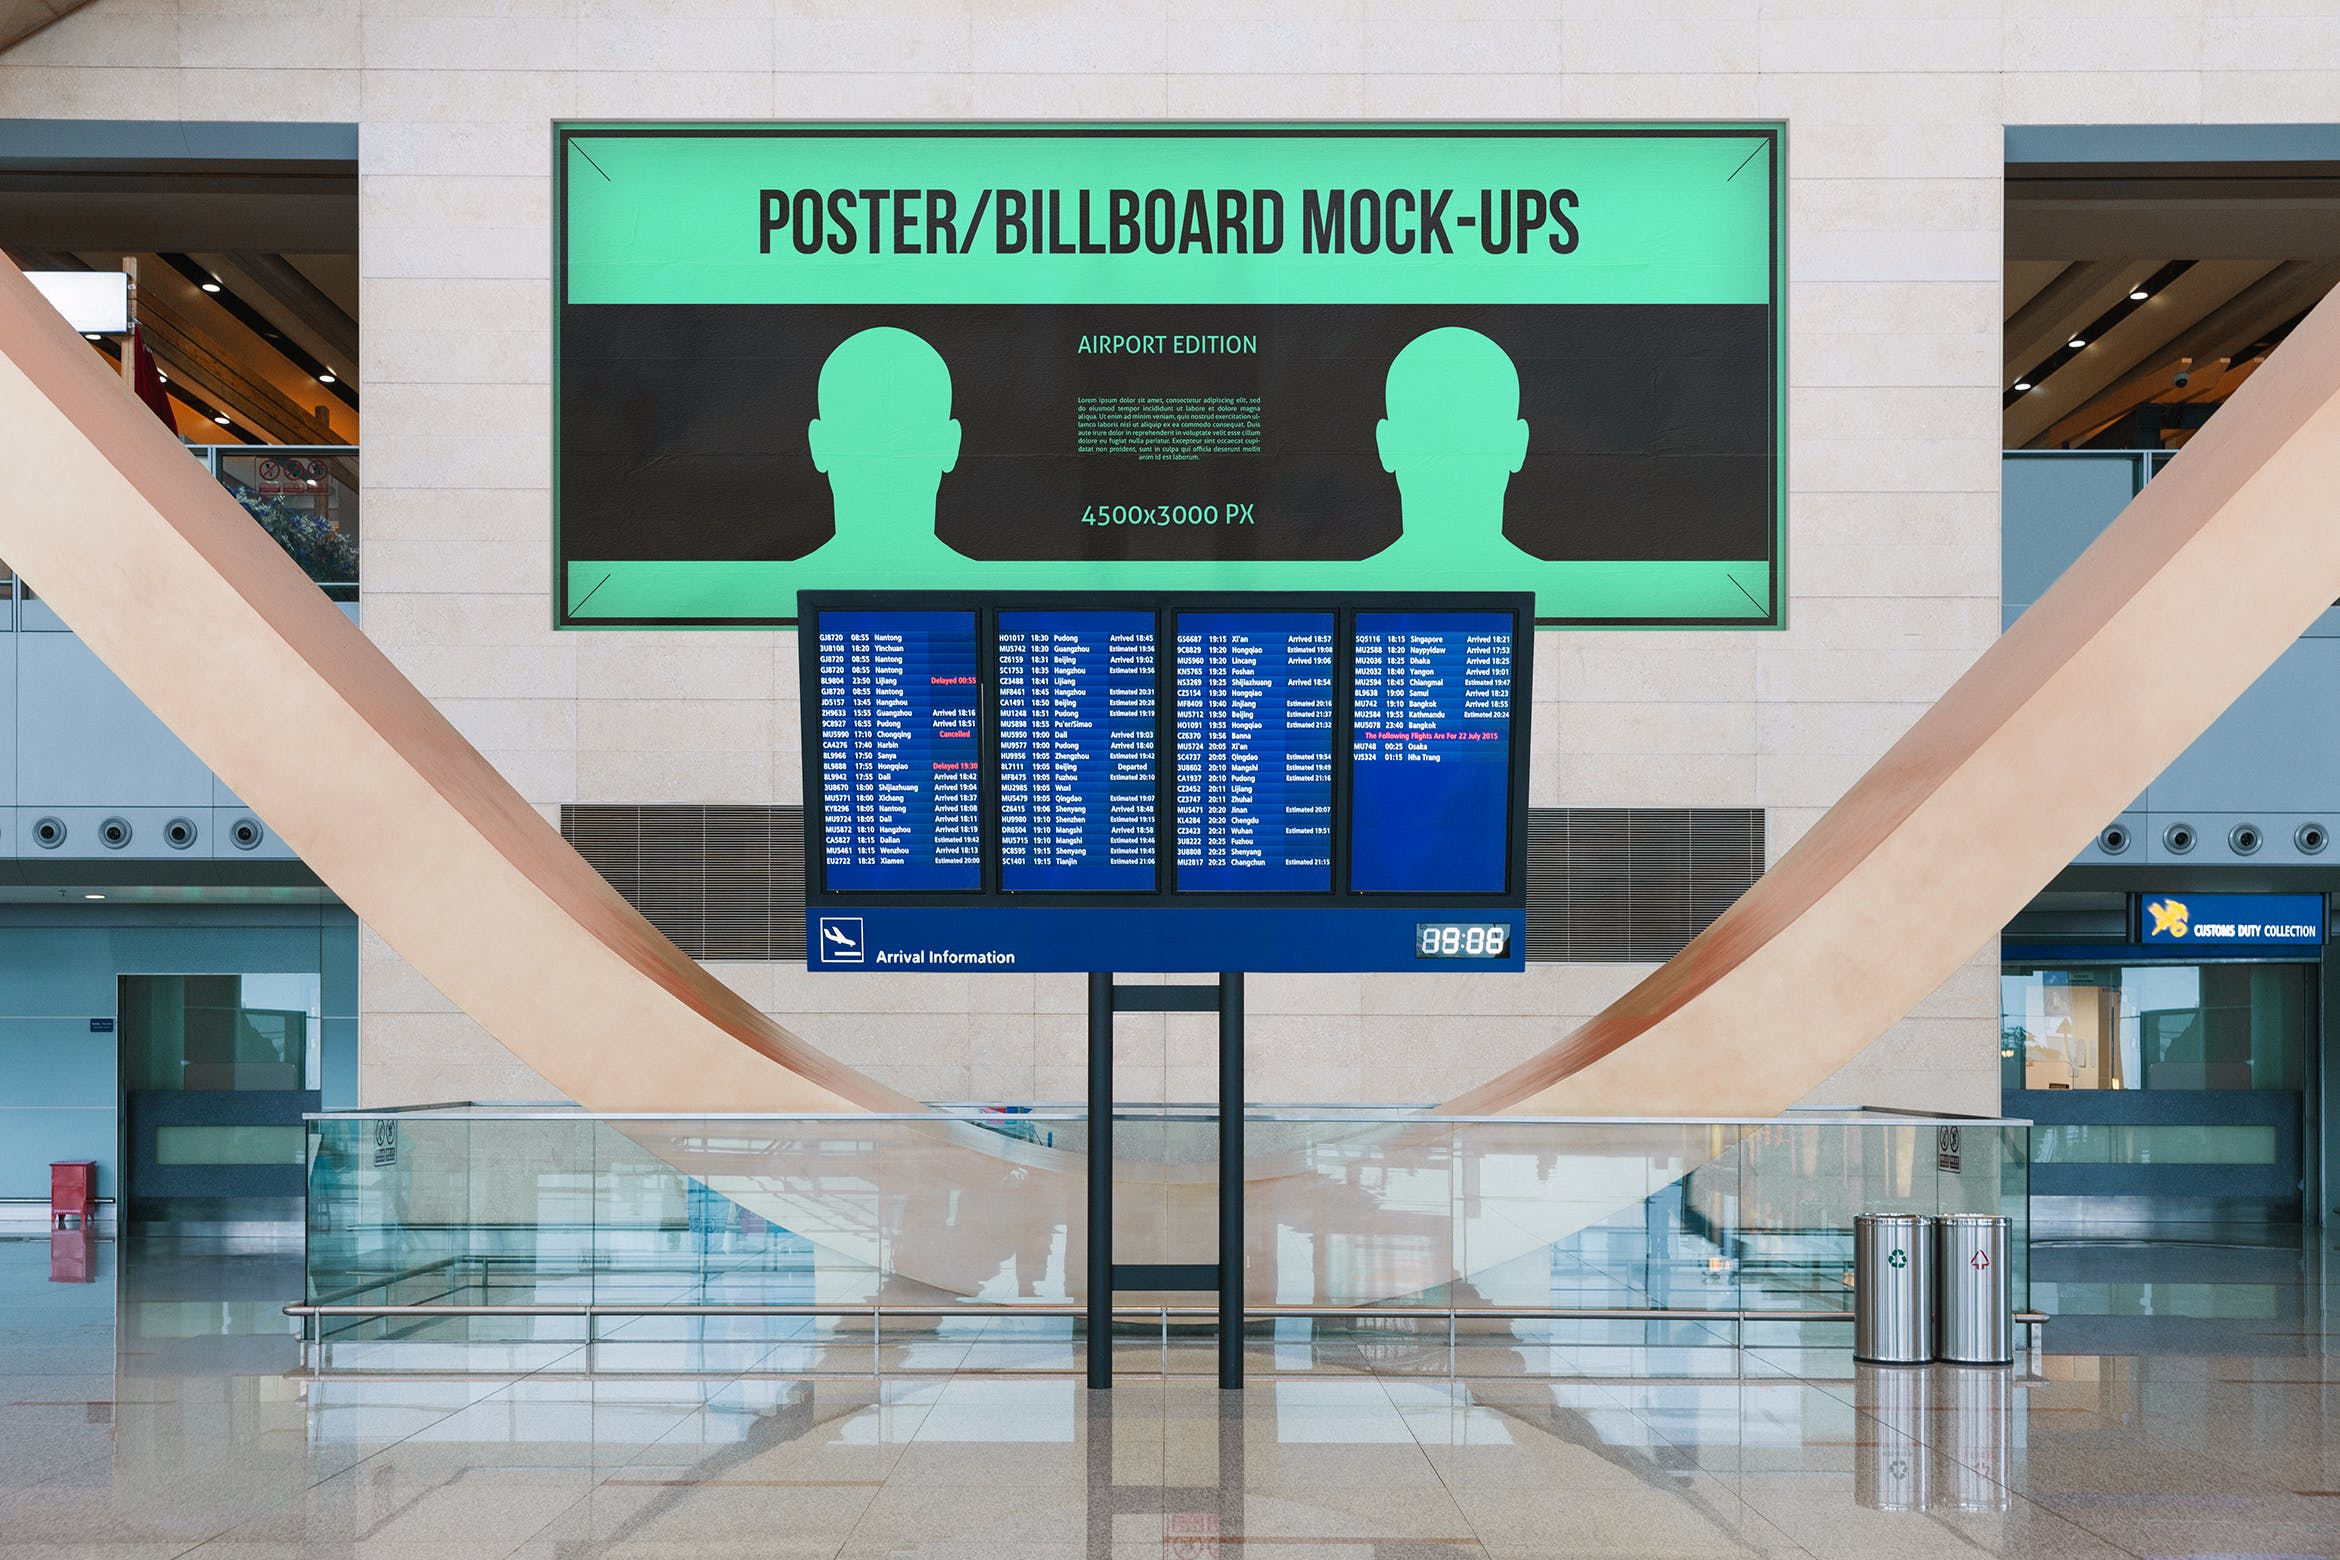 机场航班信息屏幕海报/广告牌样机蚂蚁素材精选模板#7 Poster / Billboard Mock-ups – Airport Edition #7插图